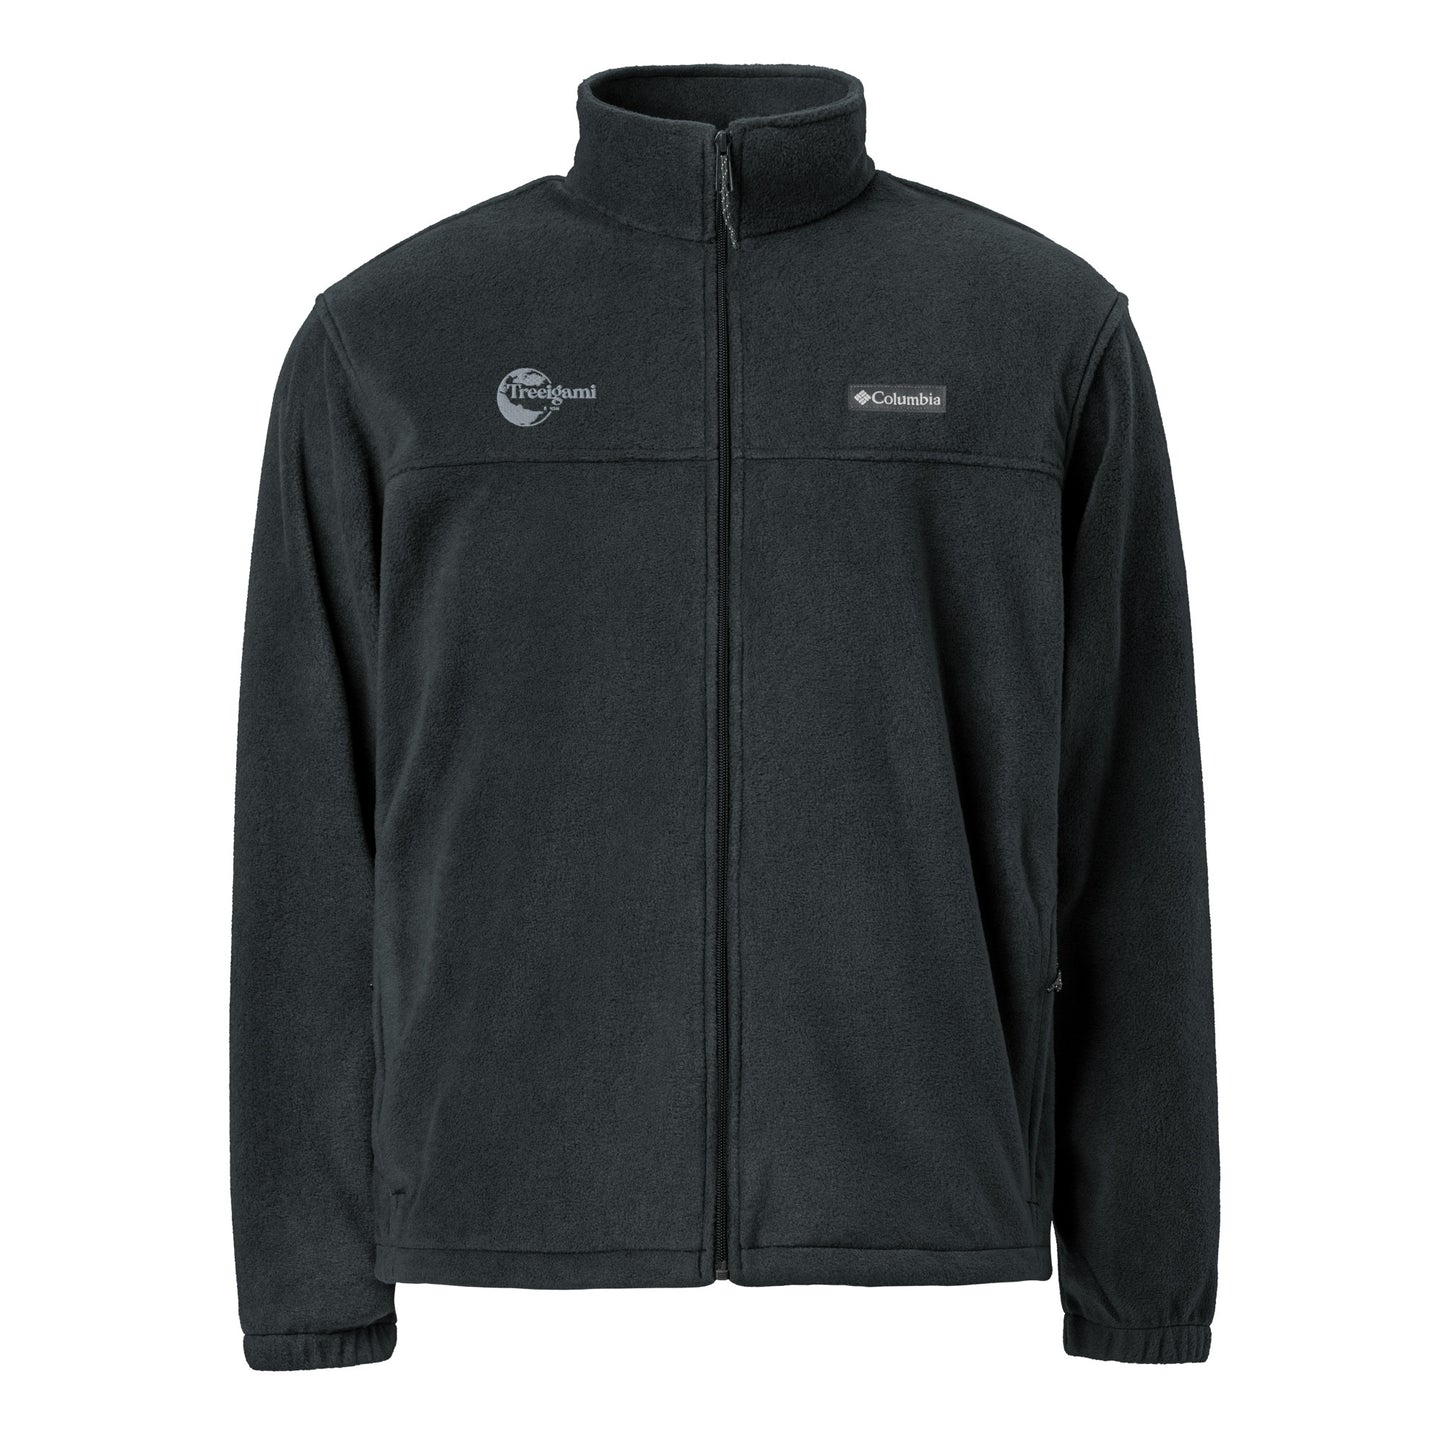 Treeigami Unisex Columbia fleece jacket - Black Embordered Logo